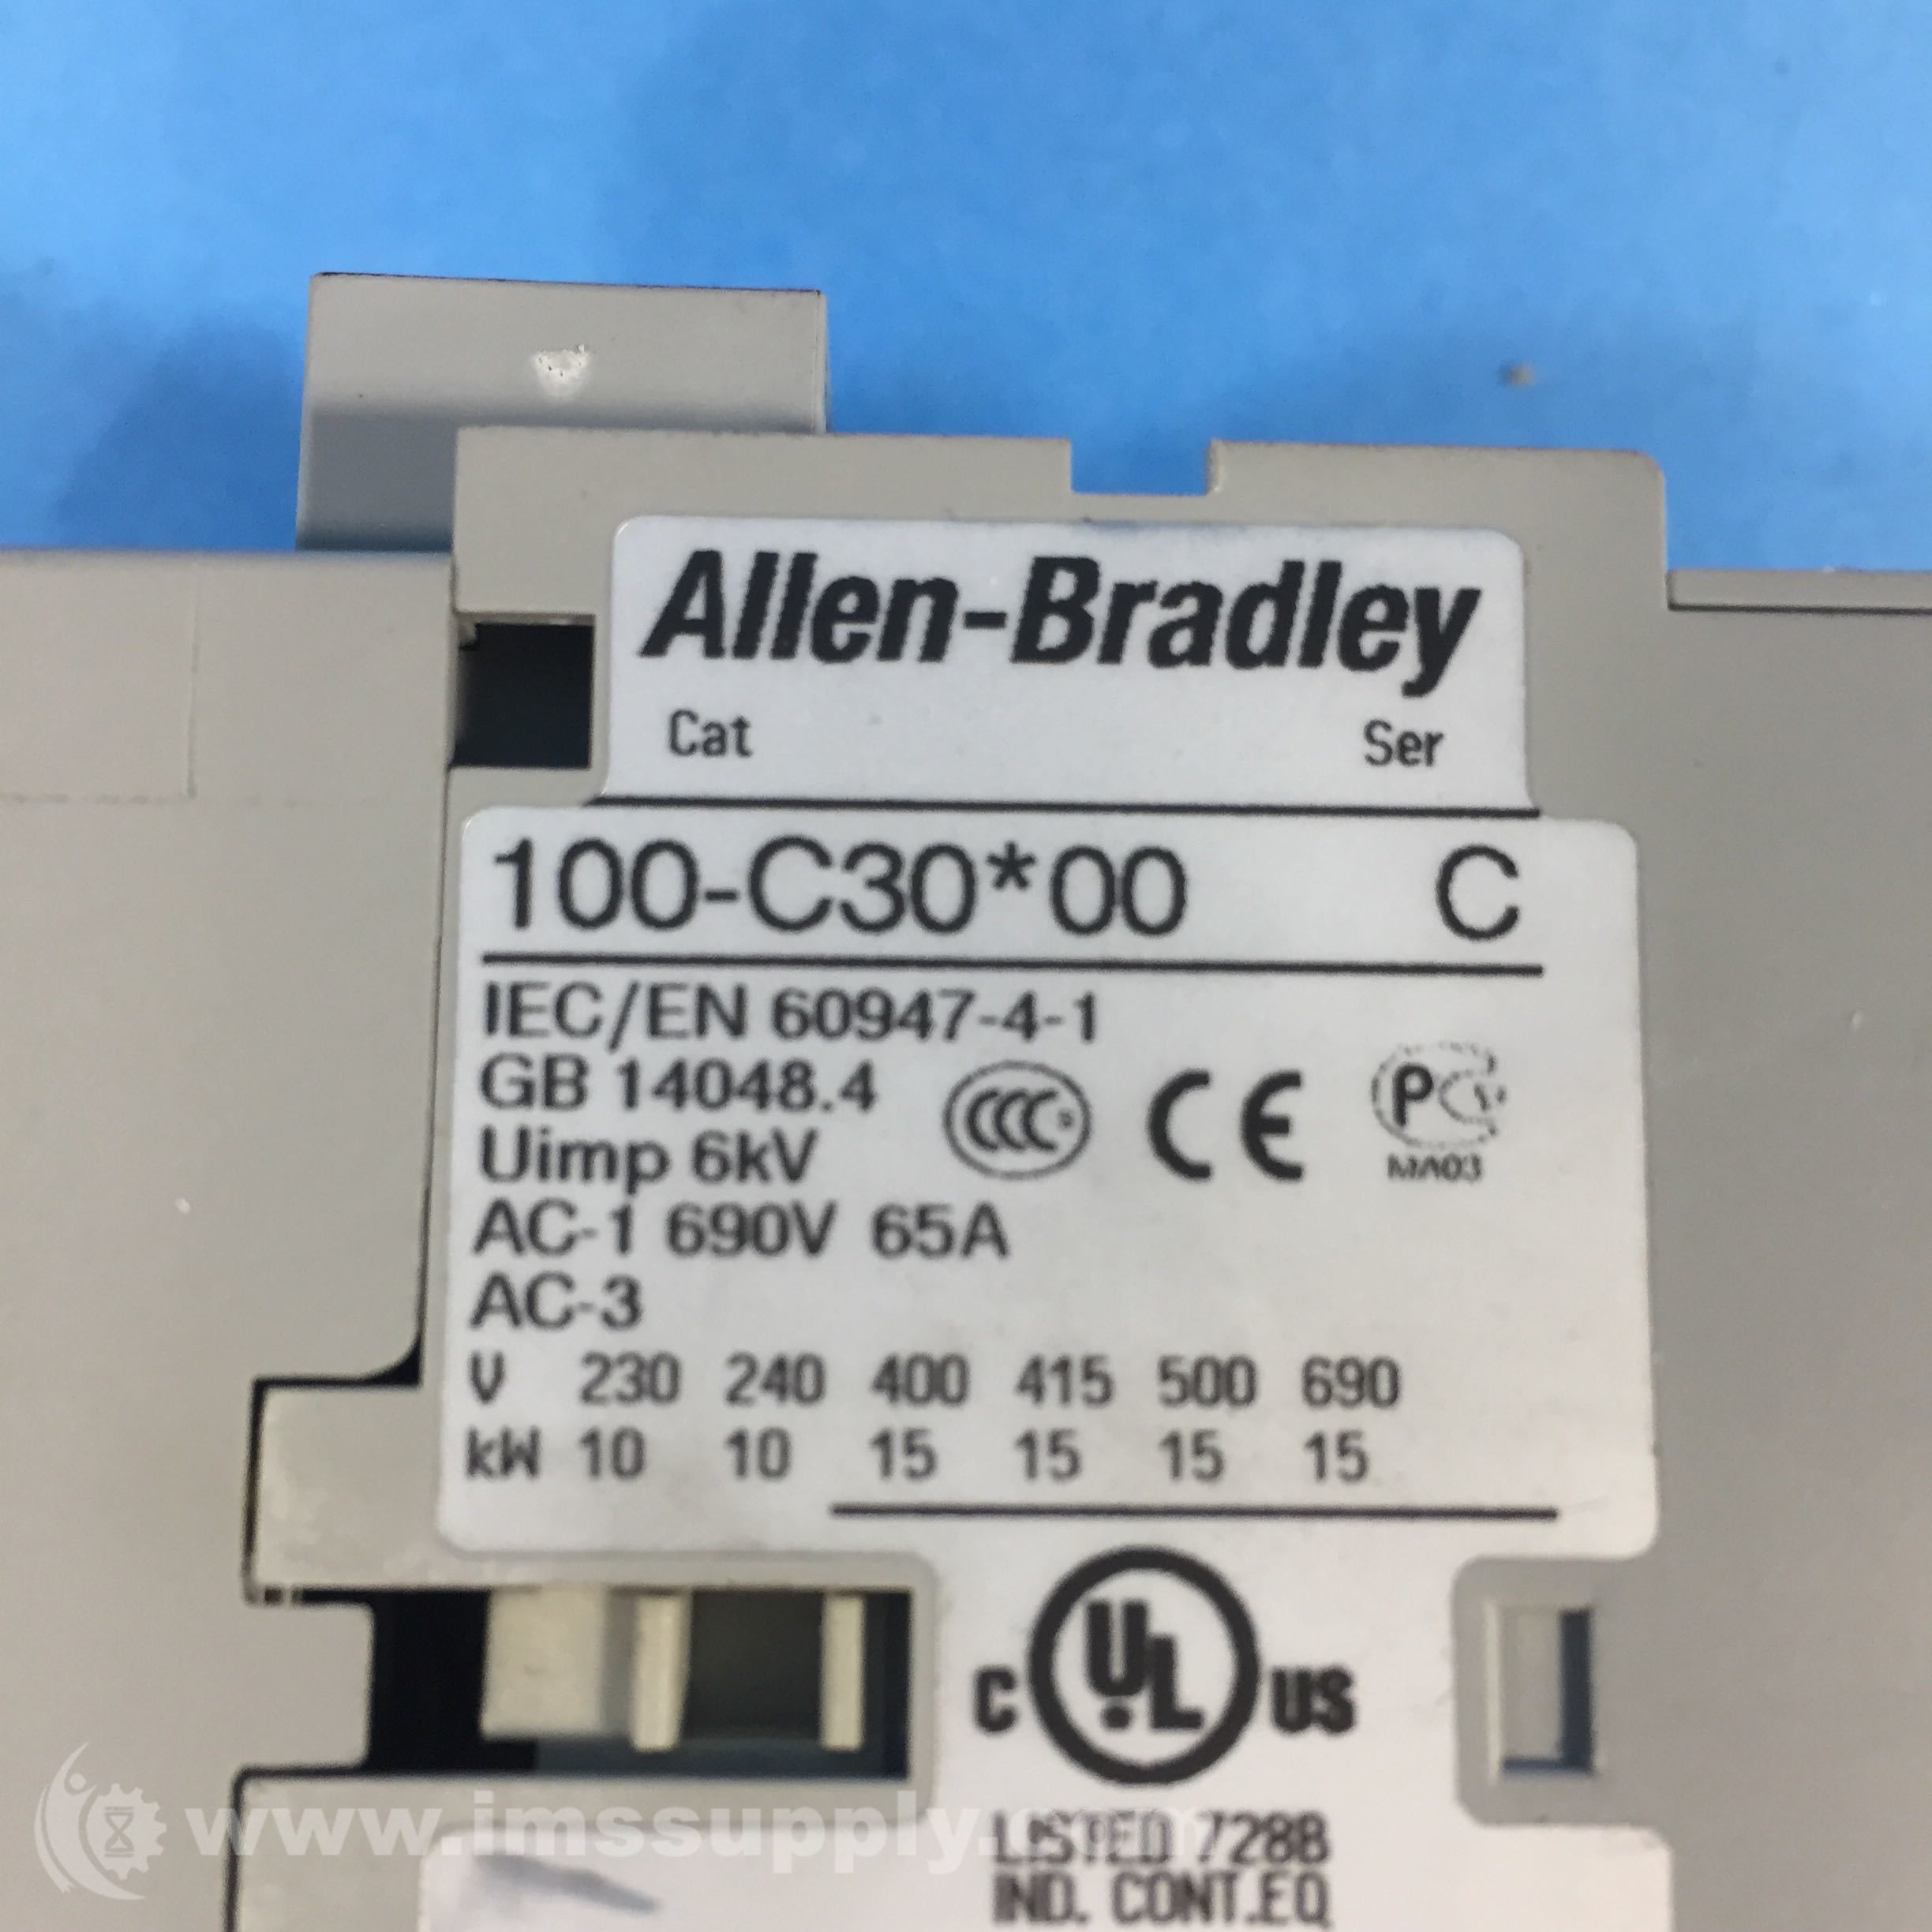 Allen-Bradley 100-C30Z-00 Contactor at Rs 1000